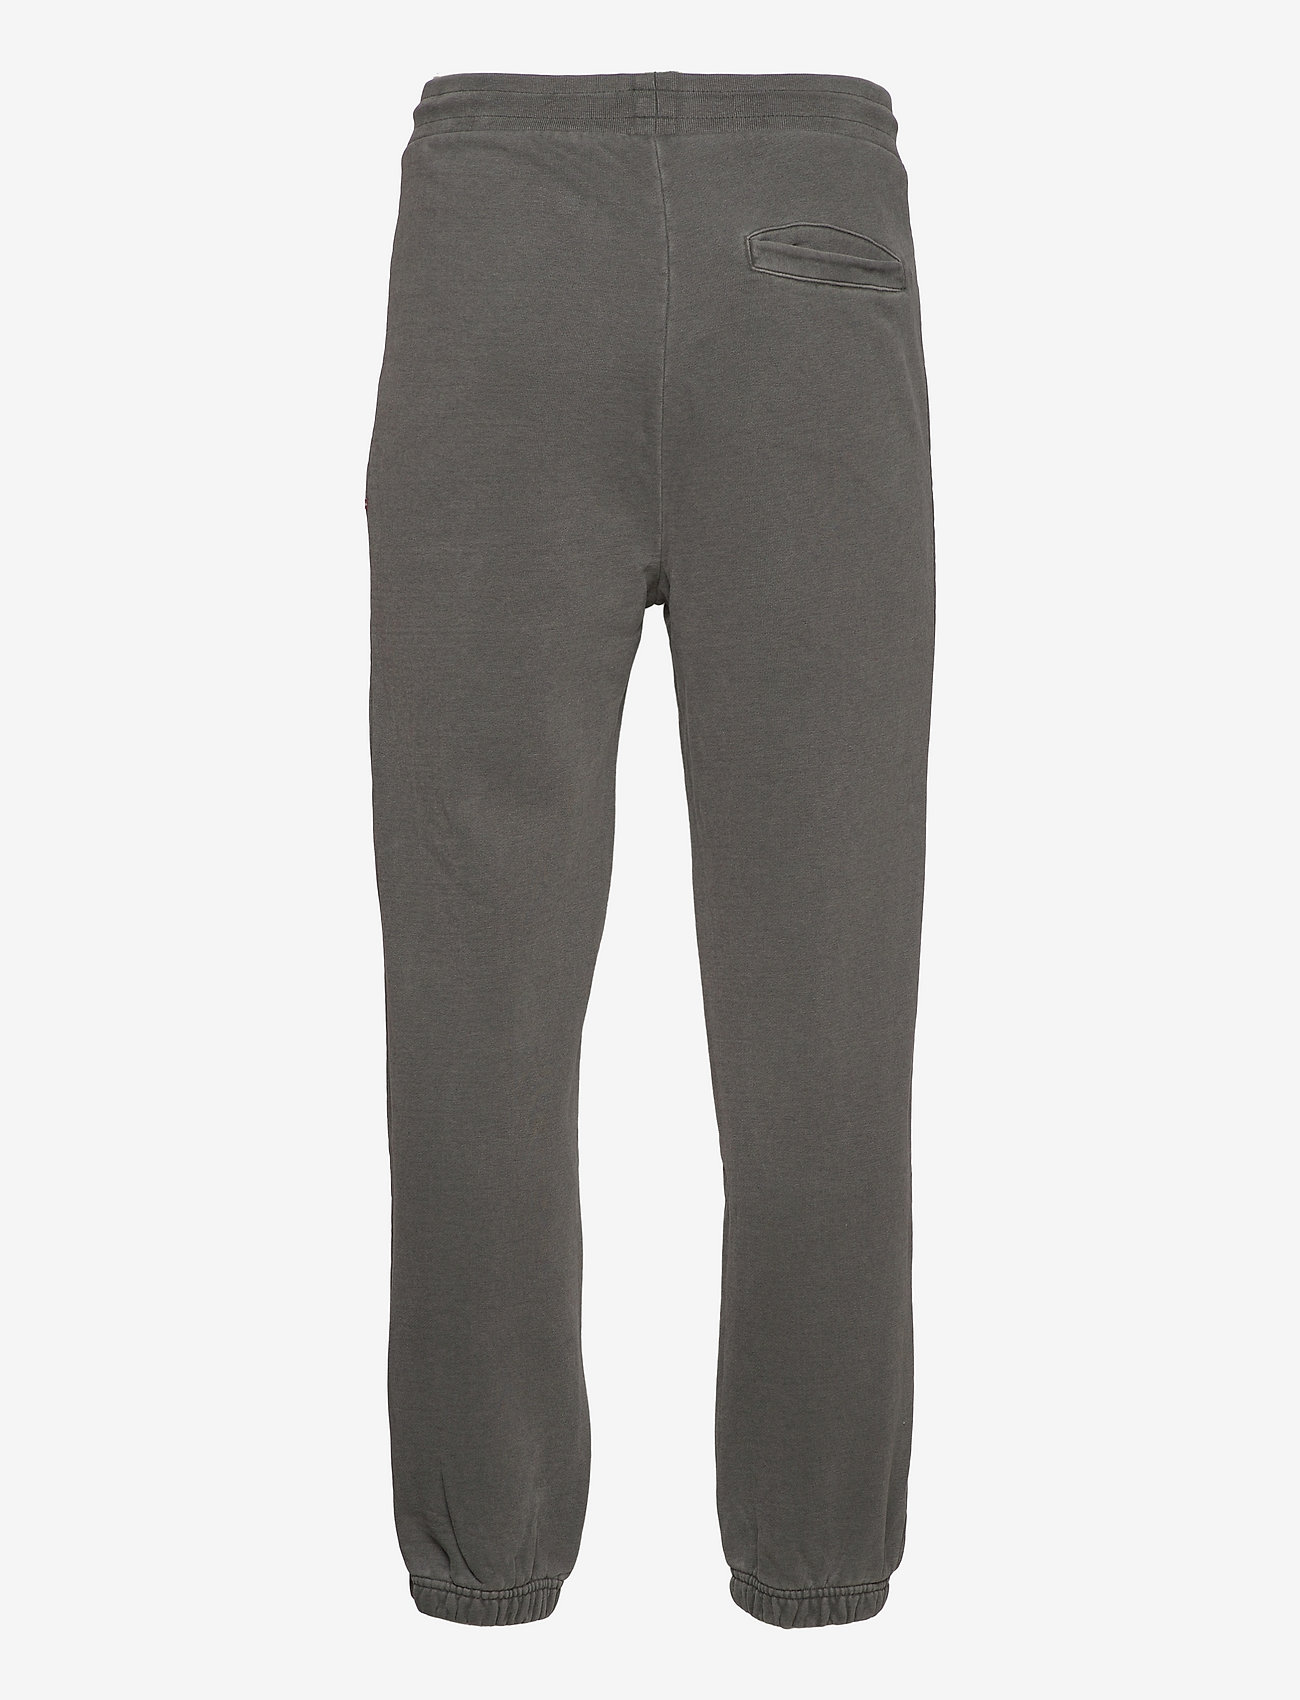 HAN Kjøbenhavn - Sweatpants - spodnie dresowe - dark grey logo - 1